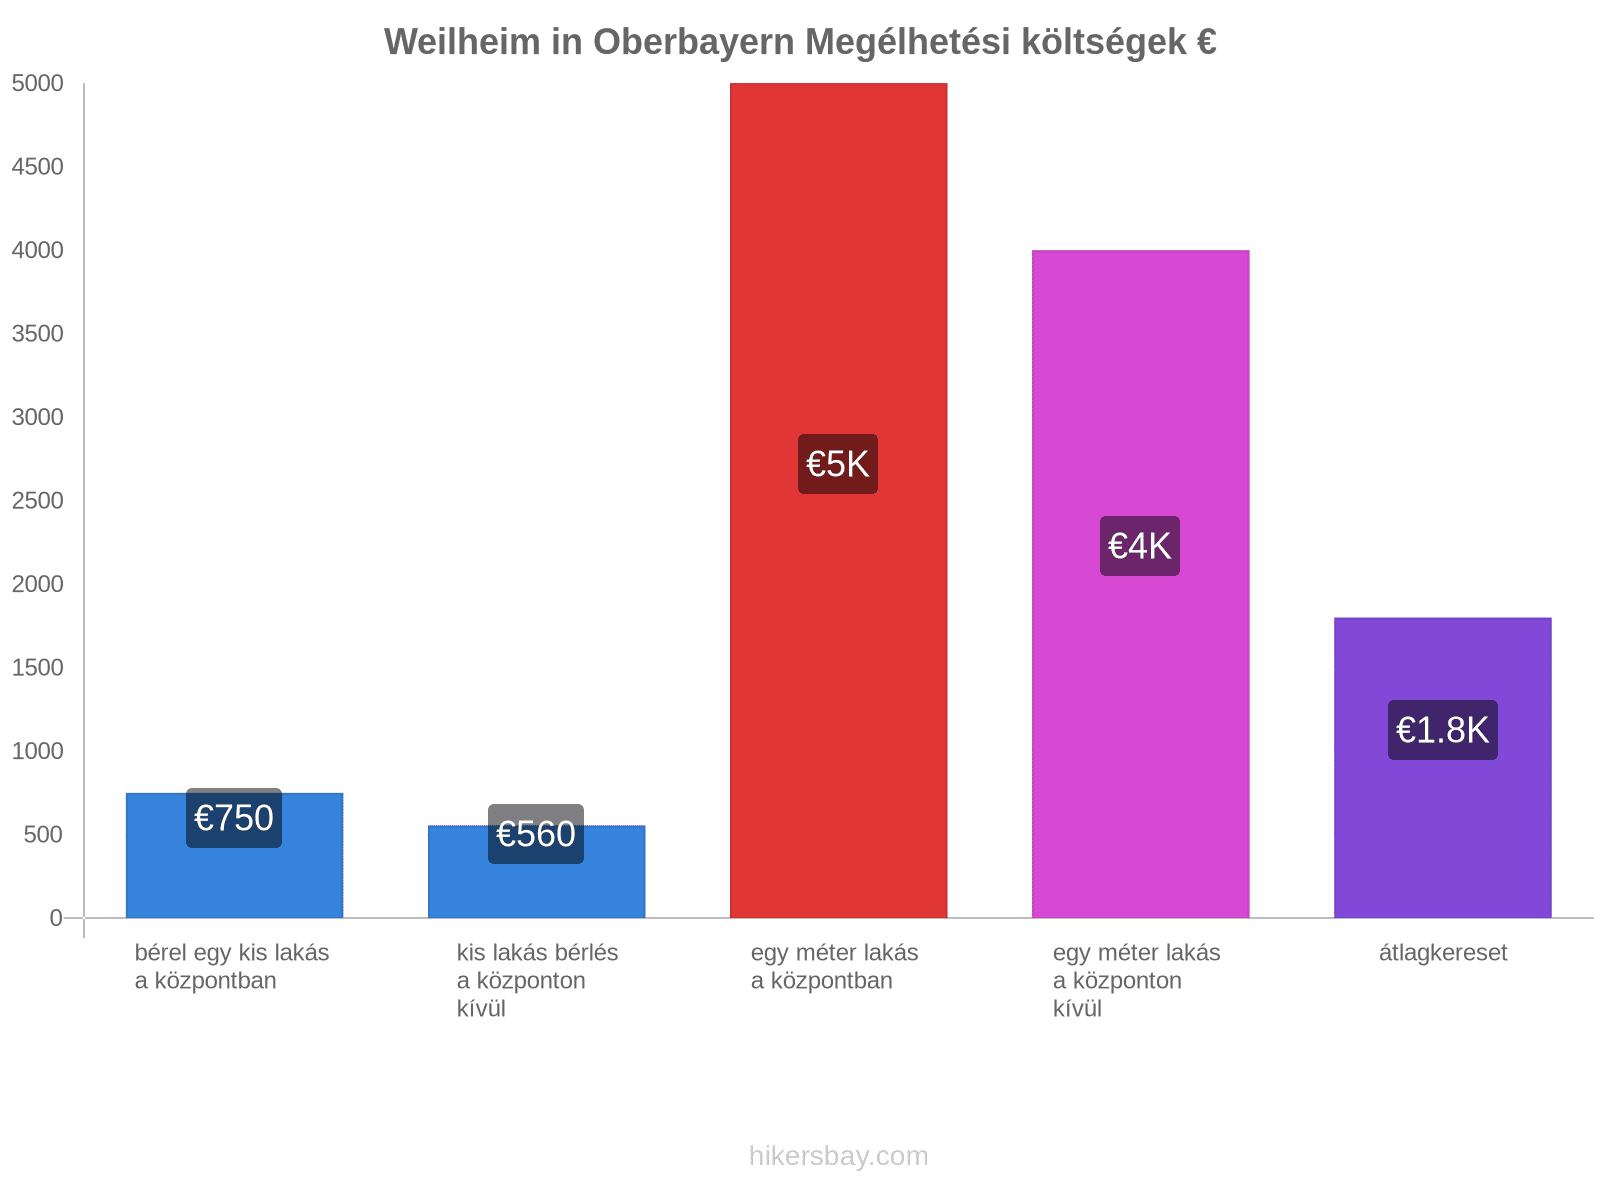 Weilheim in Oberbayern megélhetési költségek hikersbay.com